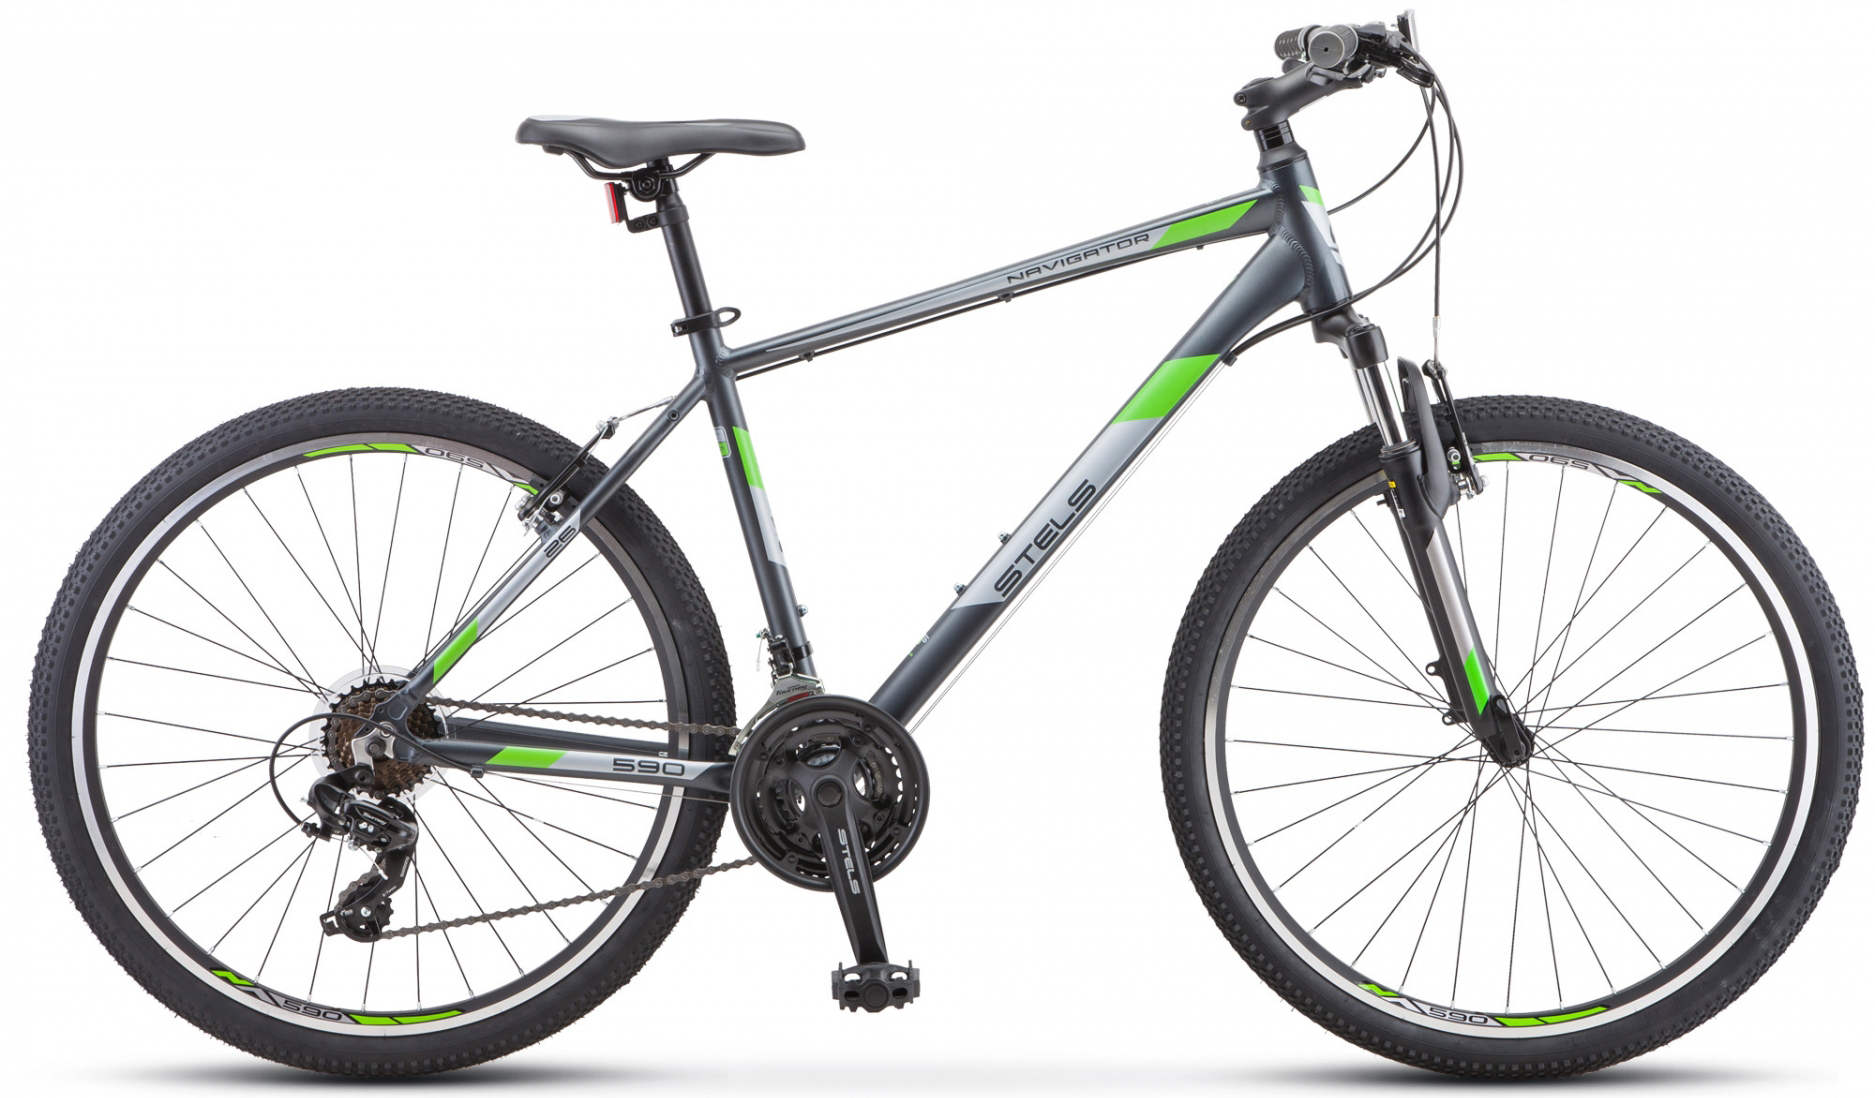  Отзывы о Горном велосипеде Stels Navigator 590 V K010 2020